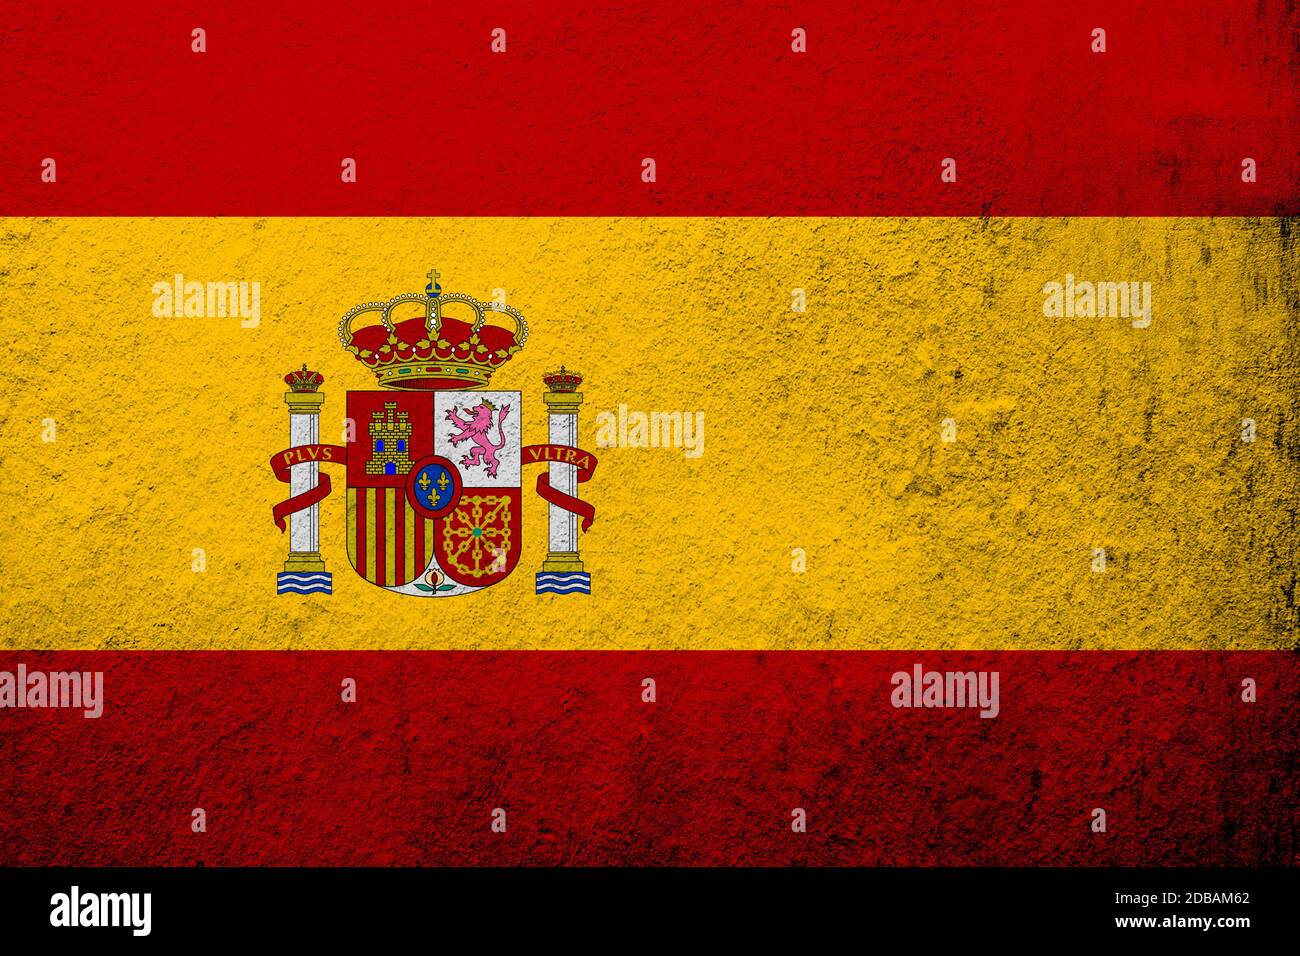 Royaume d'Espagne drapeau national la Rojigualdaavec le manteau des armes de l'Espagne. Fond Grunge Banque D'Images